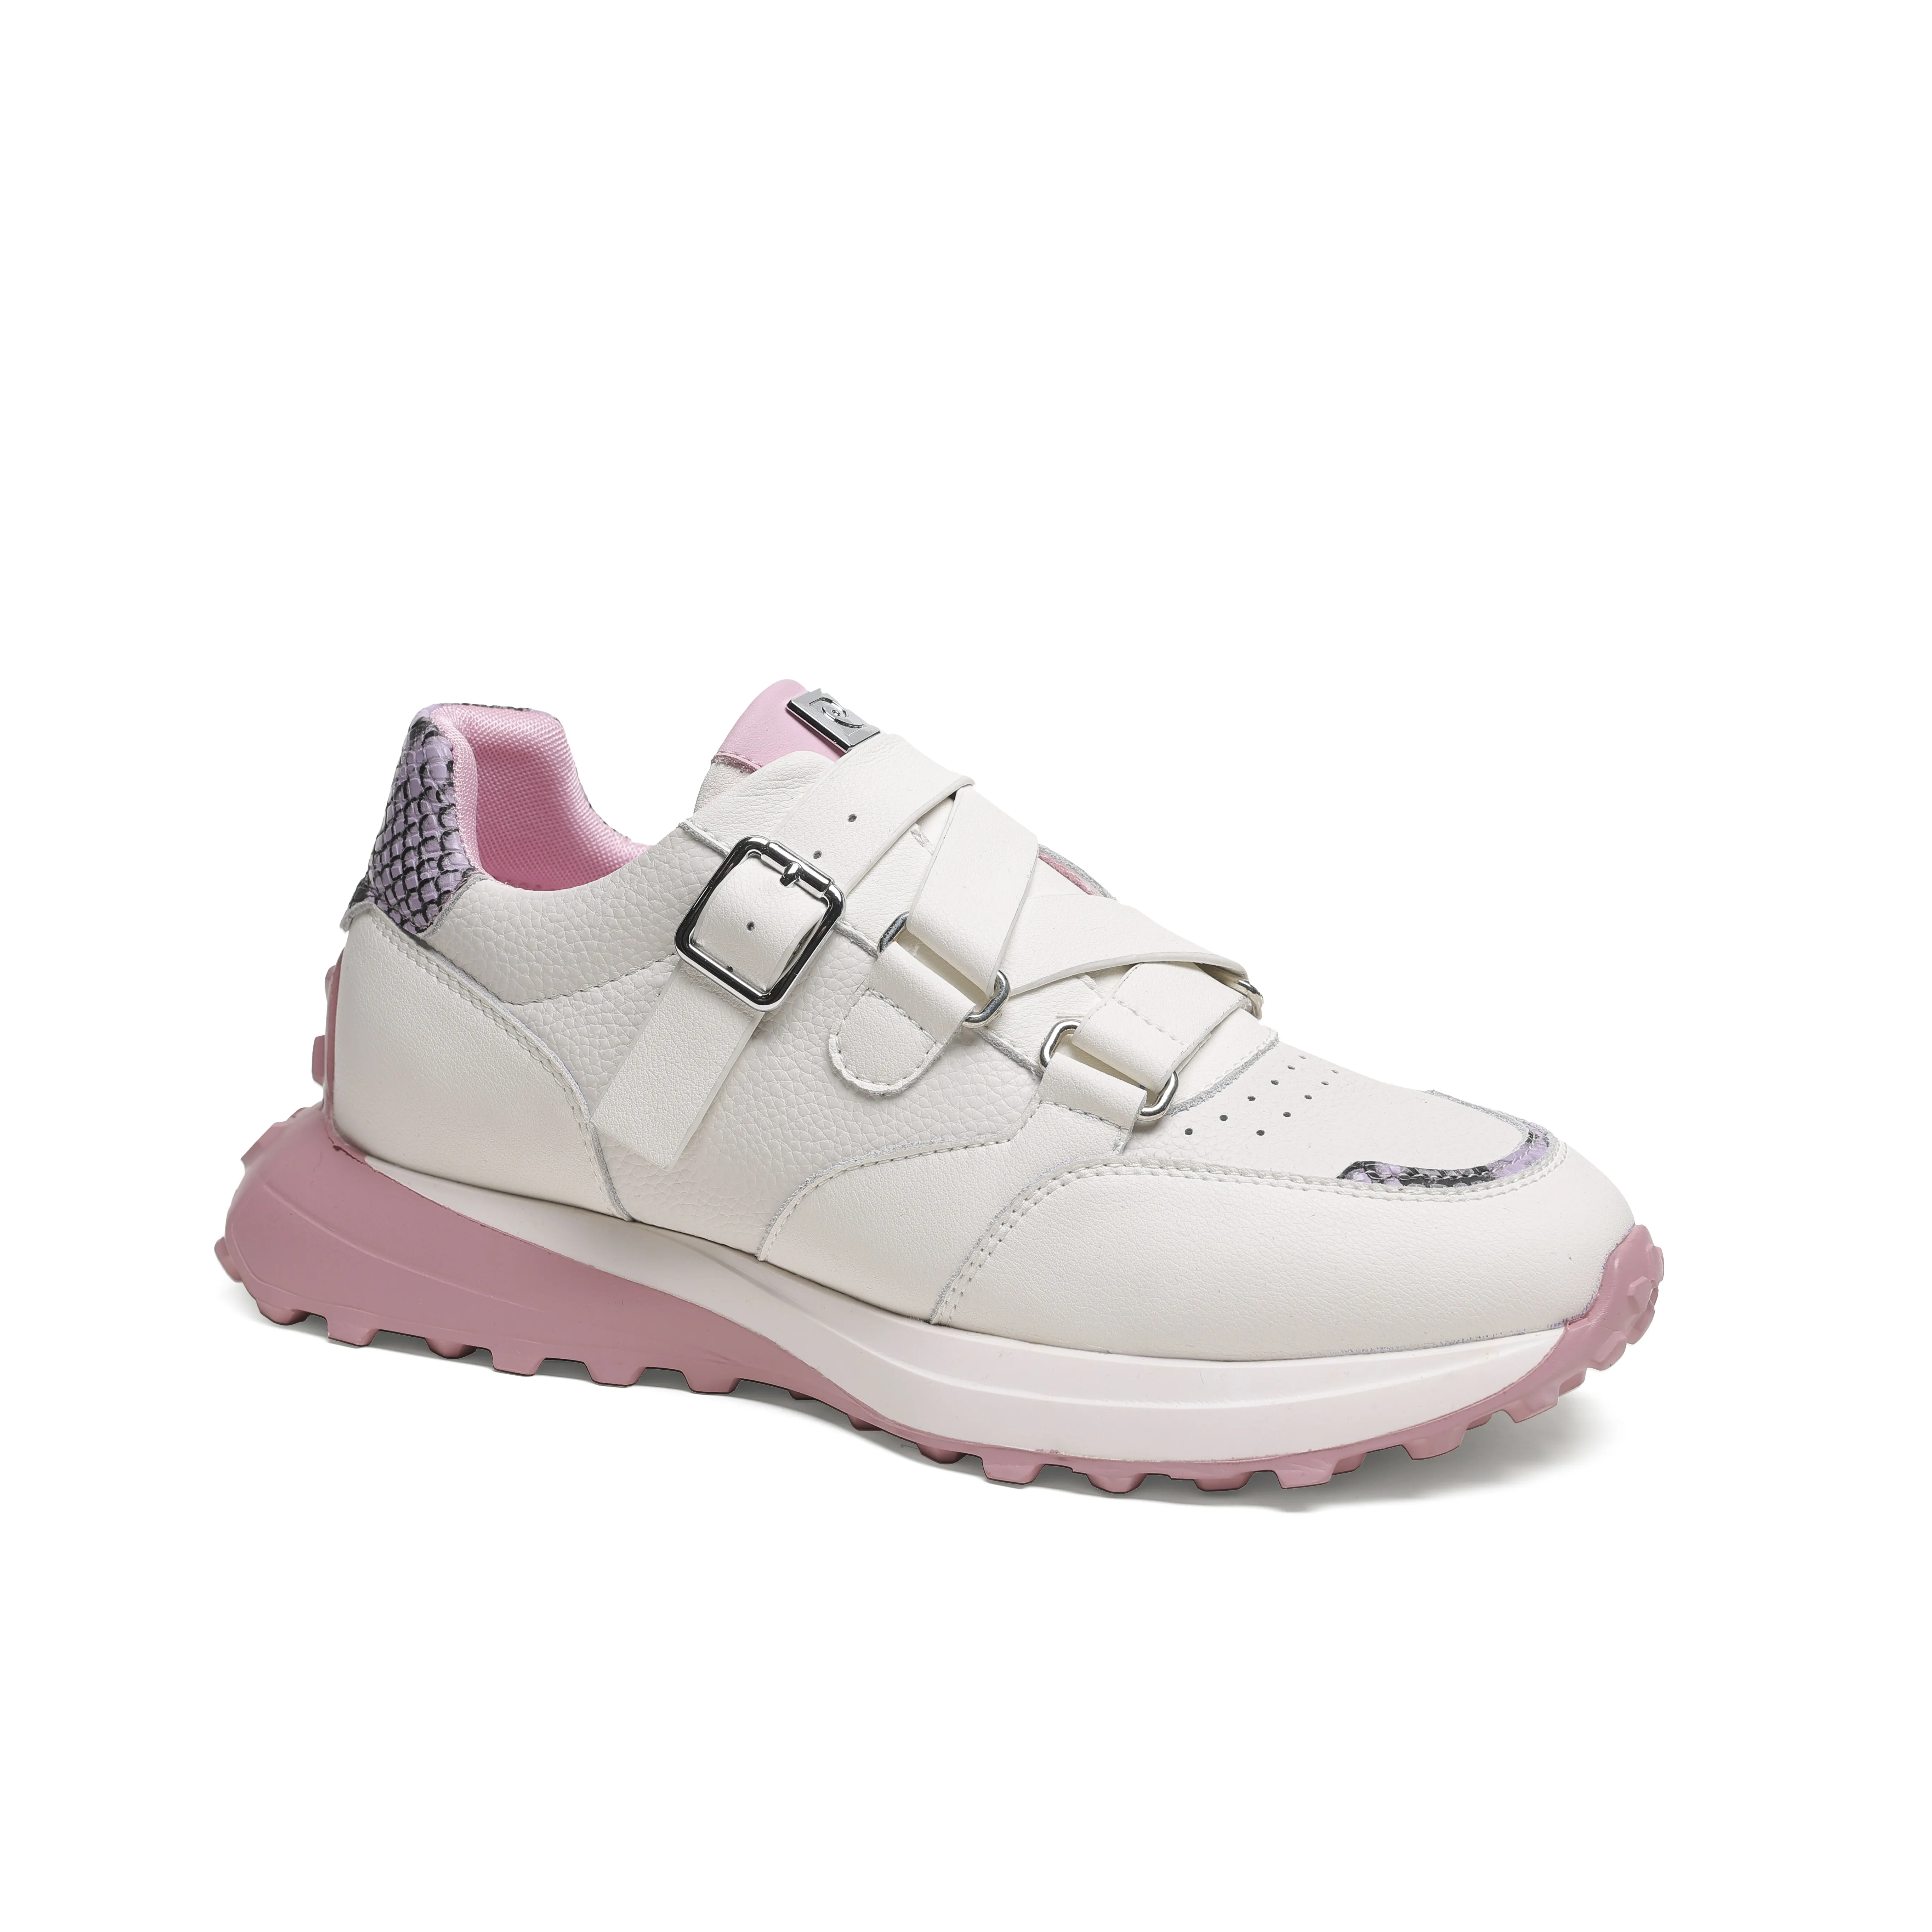 Özel yüksek kaliteli rahat spor kadın Sneakers kadınlar için Zapatos De Golf ayakkabıları